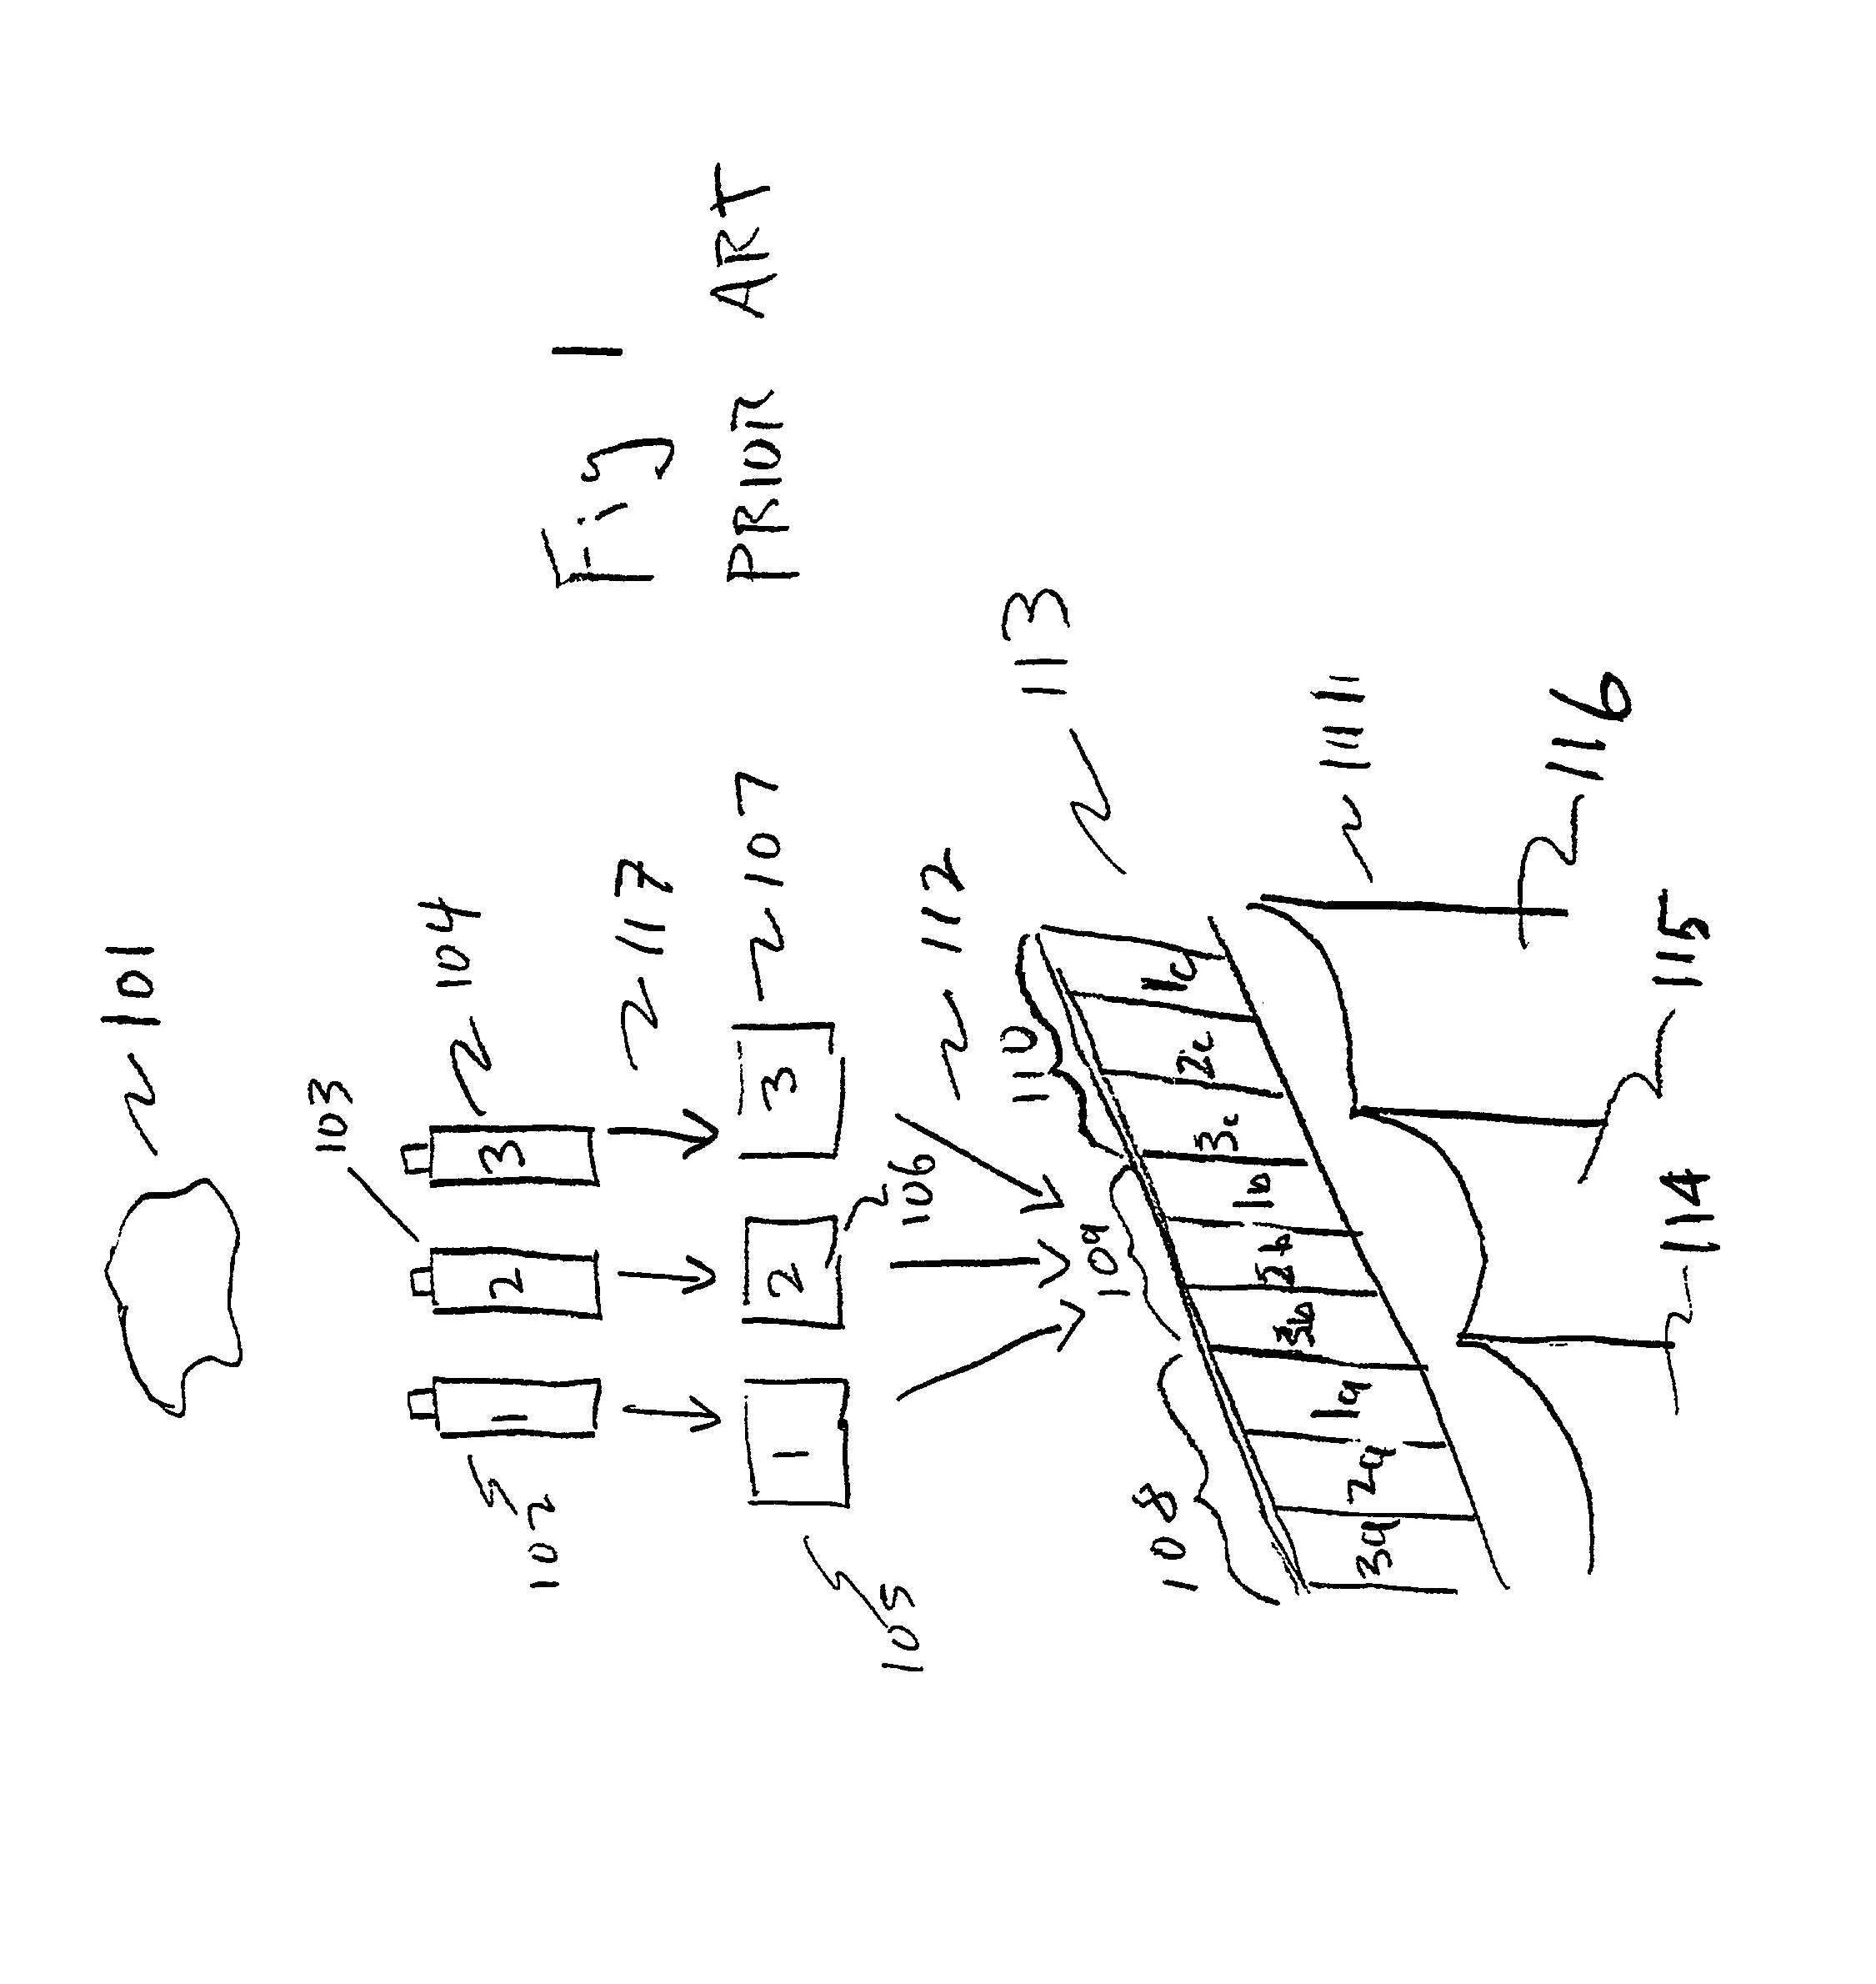 Autostereoscopic pixel arrangement techniques